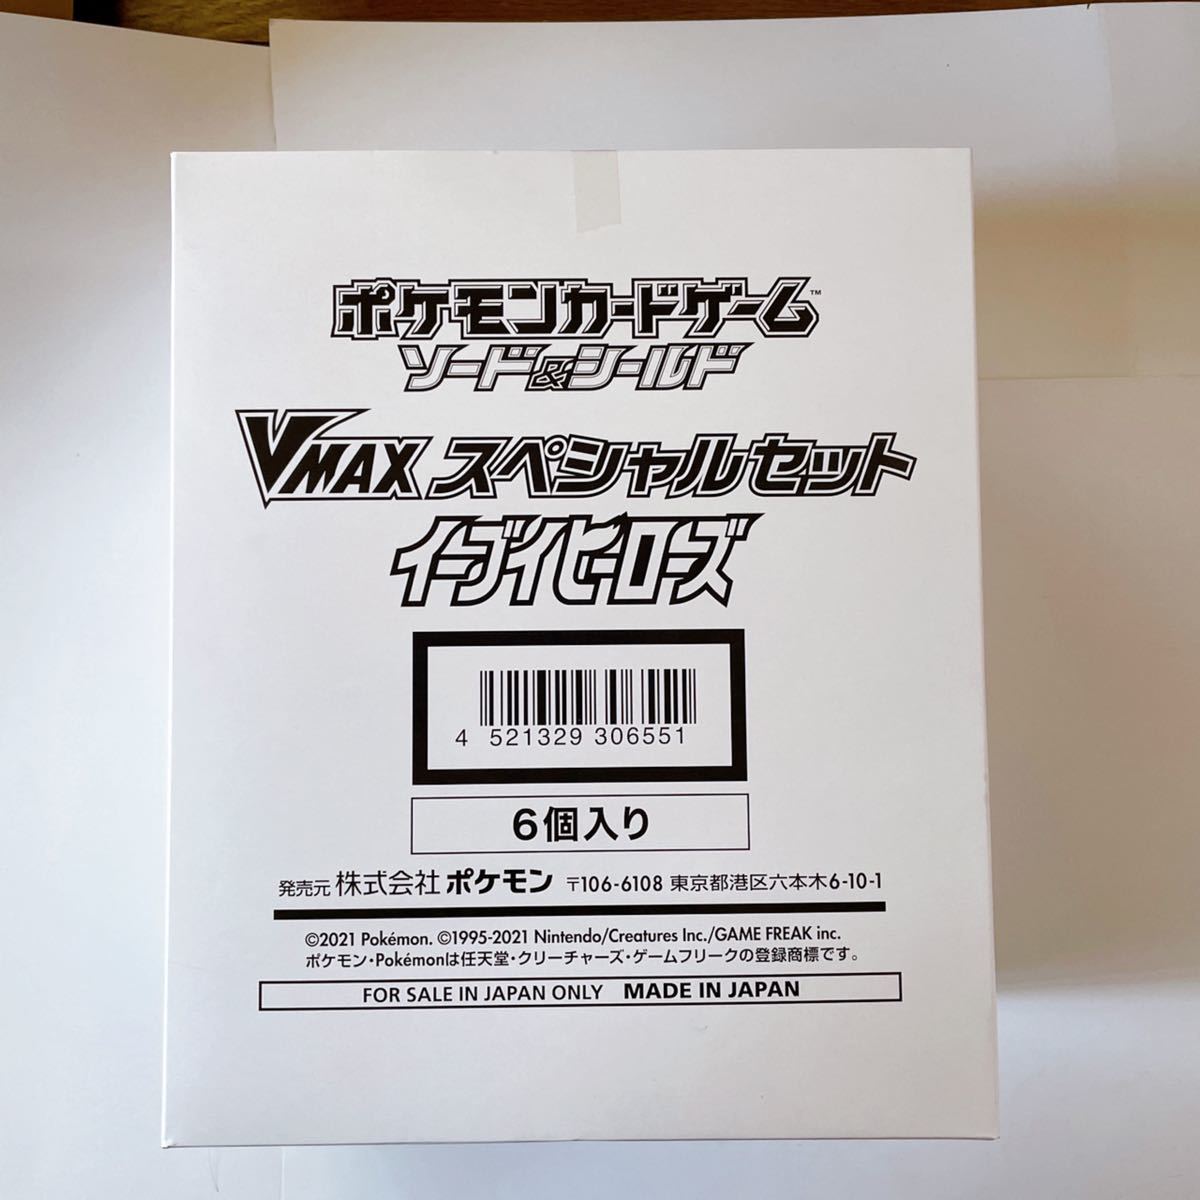 イーブイヒーローズ vmaxスペシャルセット 6個 新品未開封 ポケモン